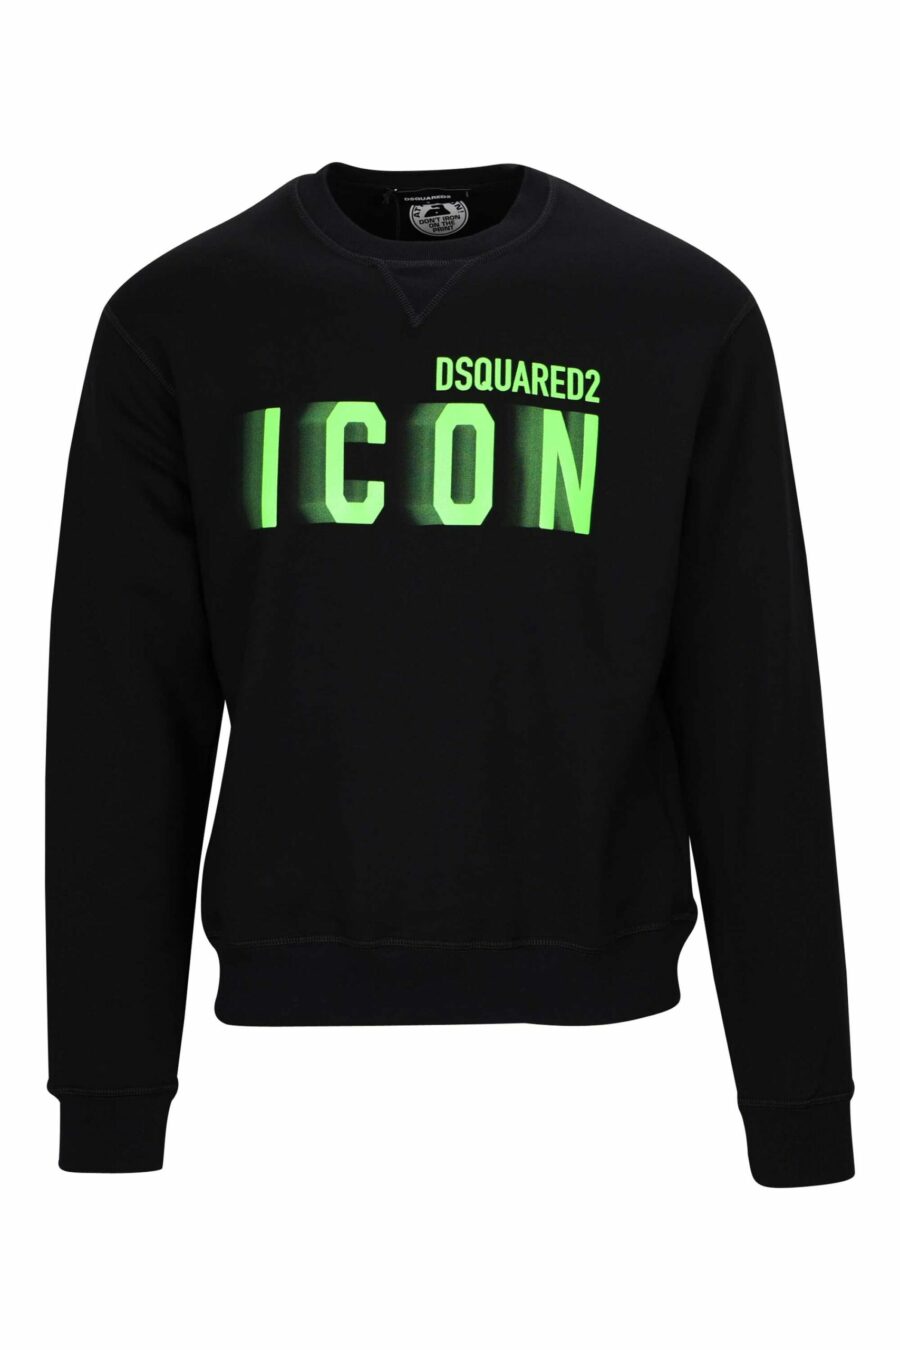 Schwarzes Sweatshirt mit neongrünem unscharfem "Icon"-Maxilogo - 8054148360863 skaliert